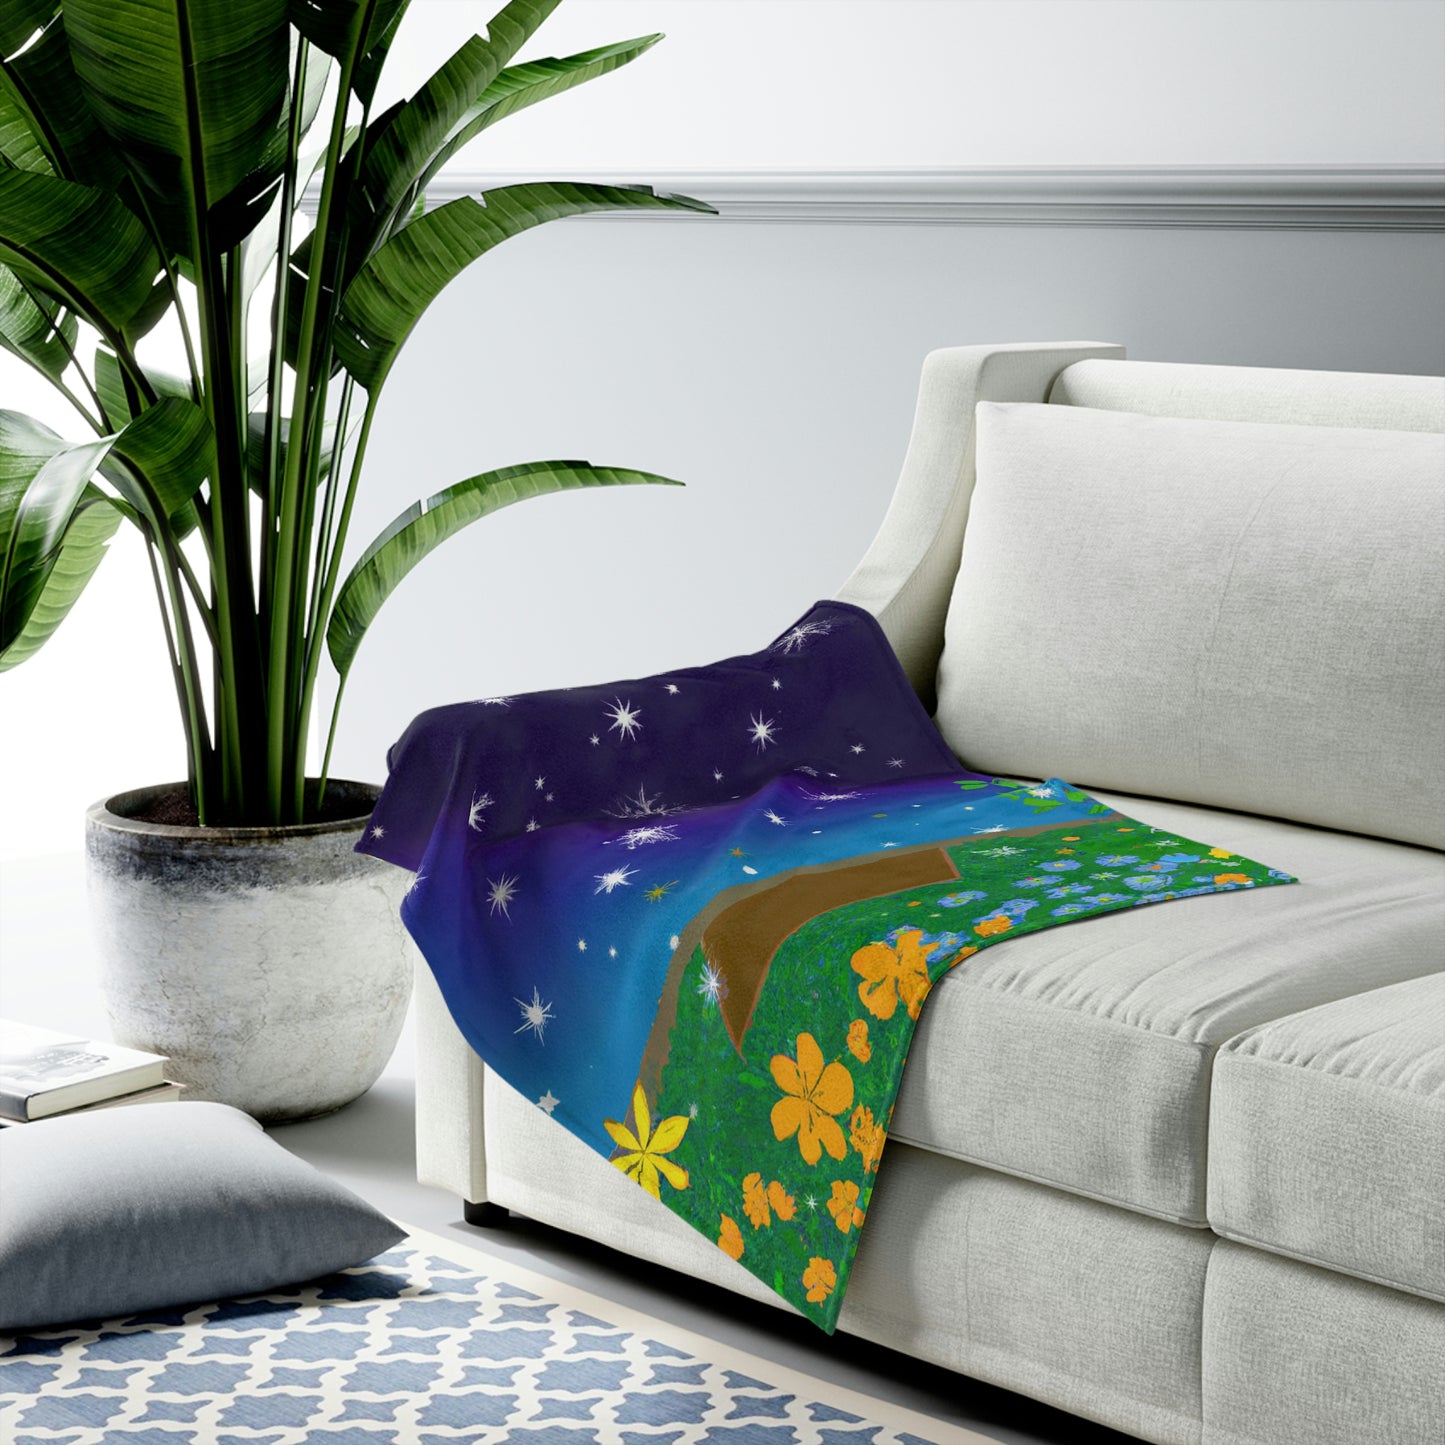 "A Celestial Garden of Color" - The Alien Velveteen Plush Blanket